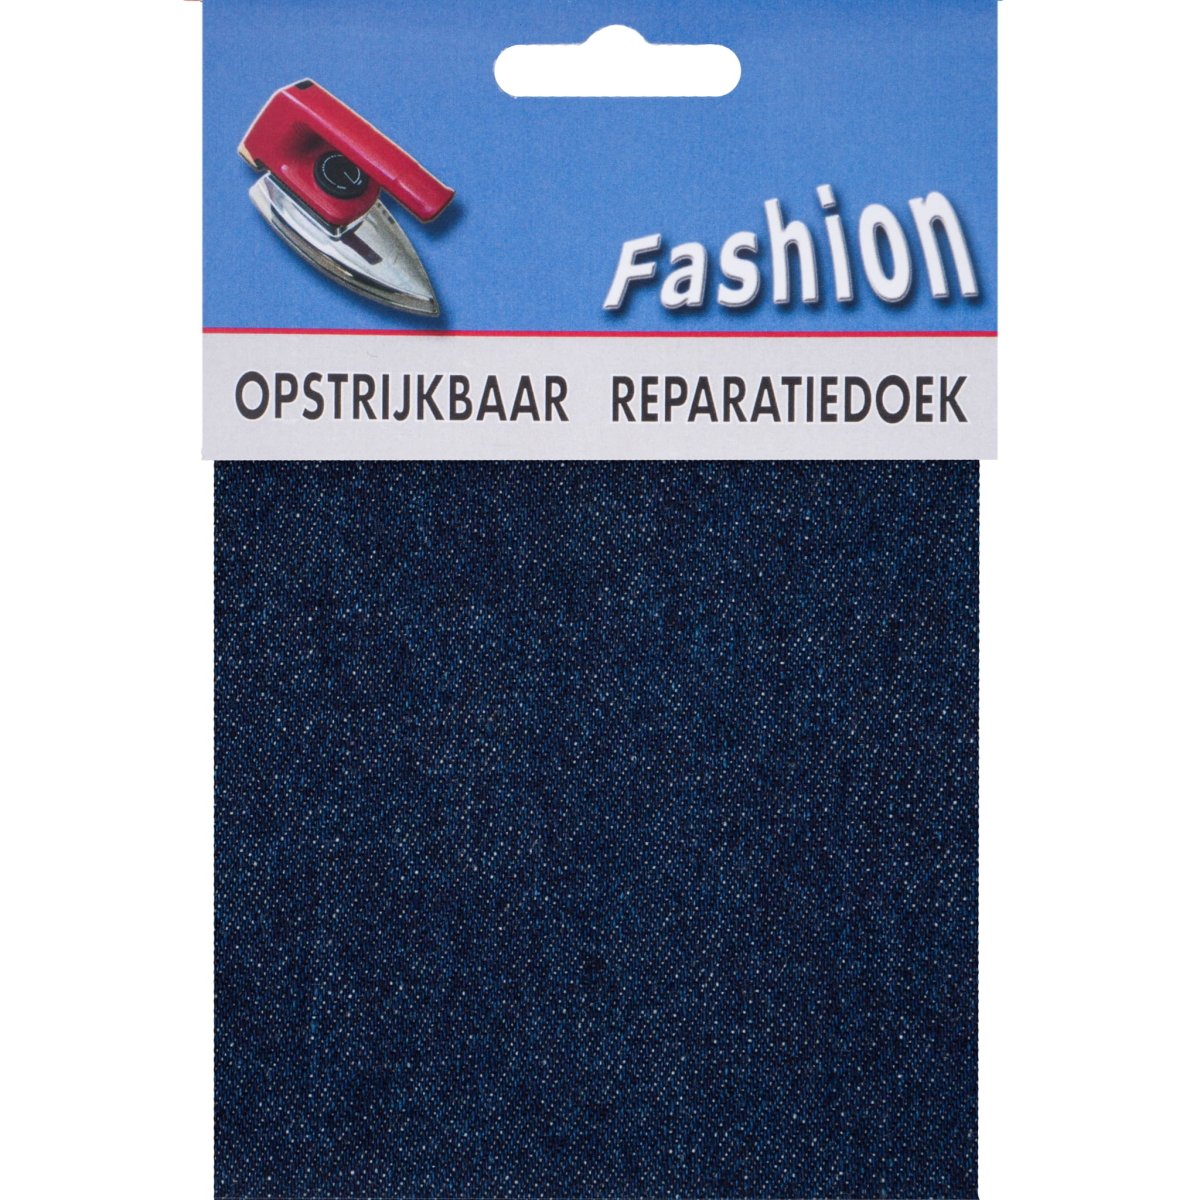 Reparatiedoek Jeans Fashion opstrijkbaar stevig 10x40cm Repraratiedoek RPD117402 - Fourniturenkraam.nl